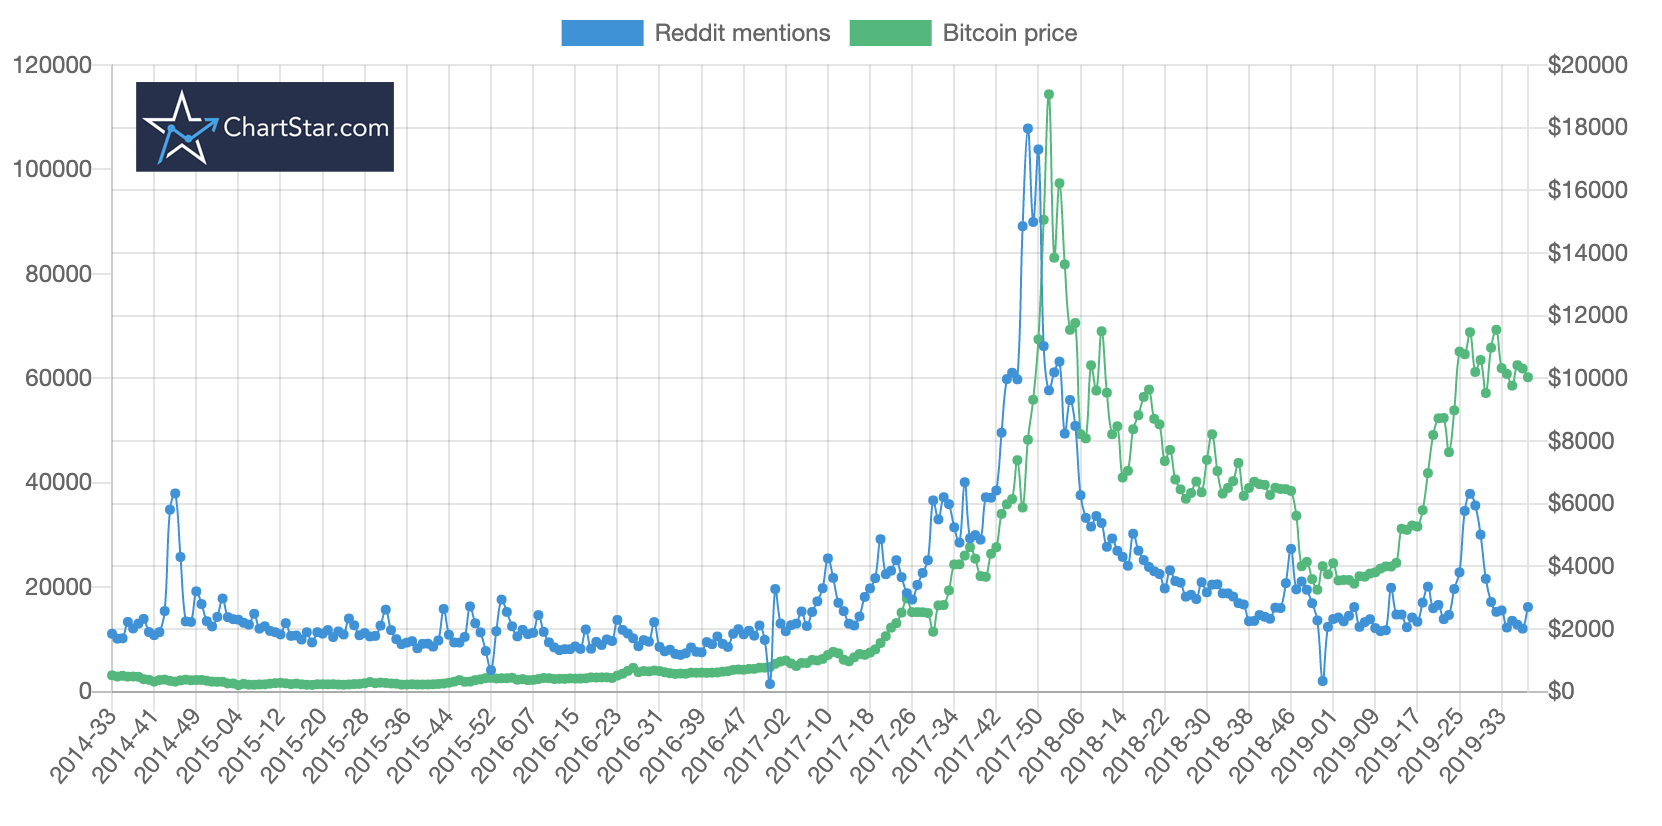 Bitcoin price vs reddit mentions